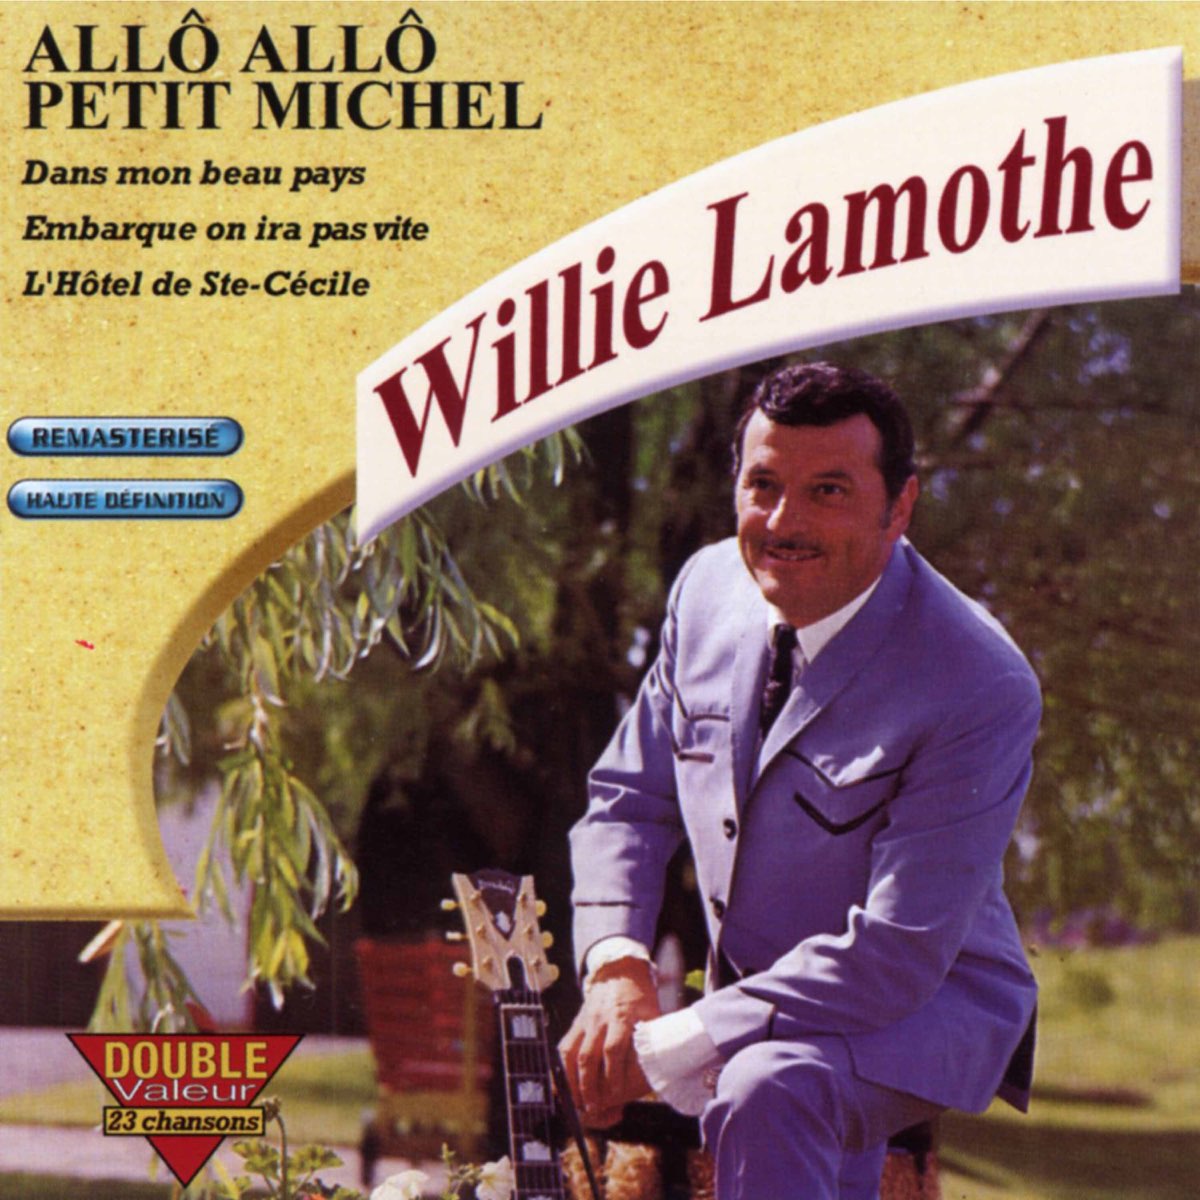 Слушать музыку ало ало. Willie Lamothe. Michel petit.